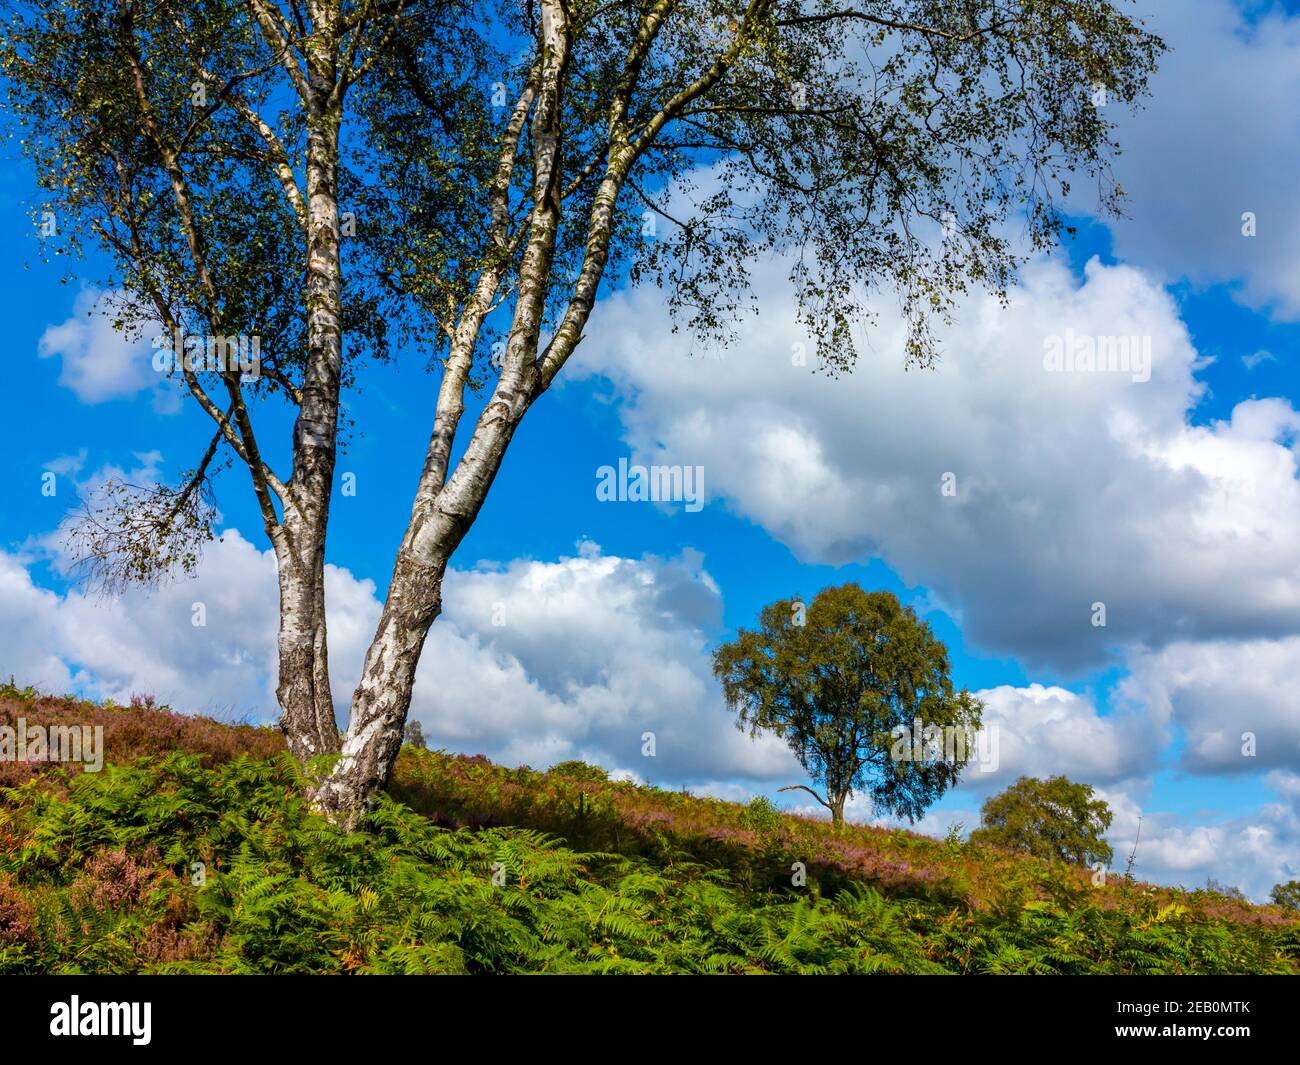 Bouleau argenté betula pendula arbres en été soleil sur Cannock Chase dans Staffordshire Angleterre Royaume-Uni. Banque D'Images